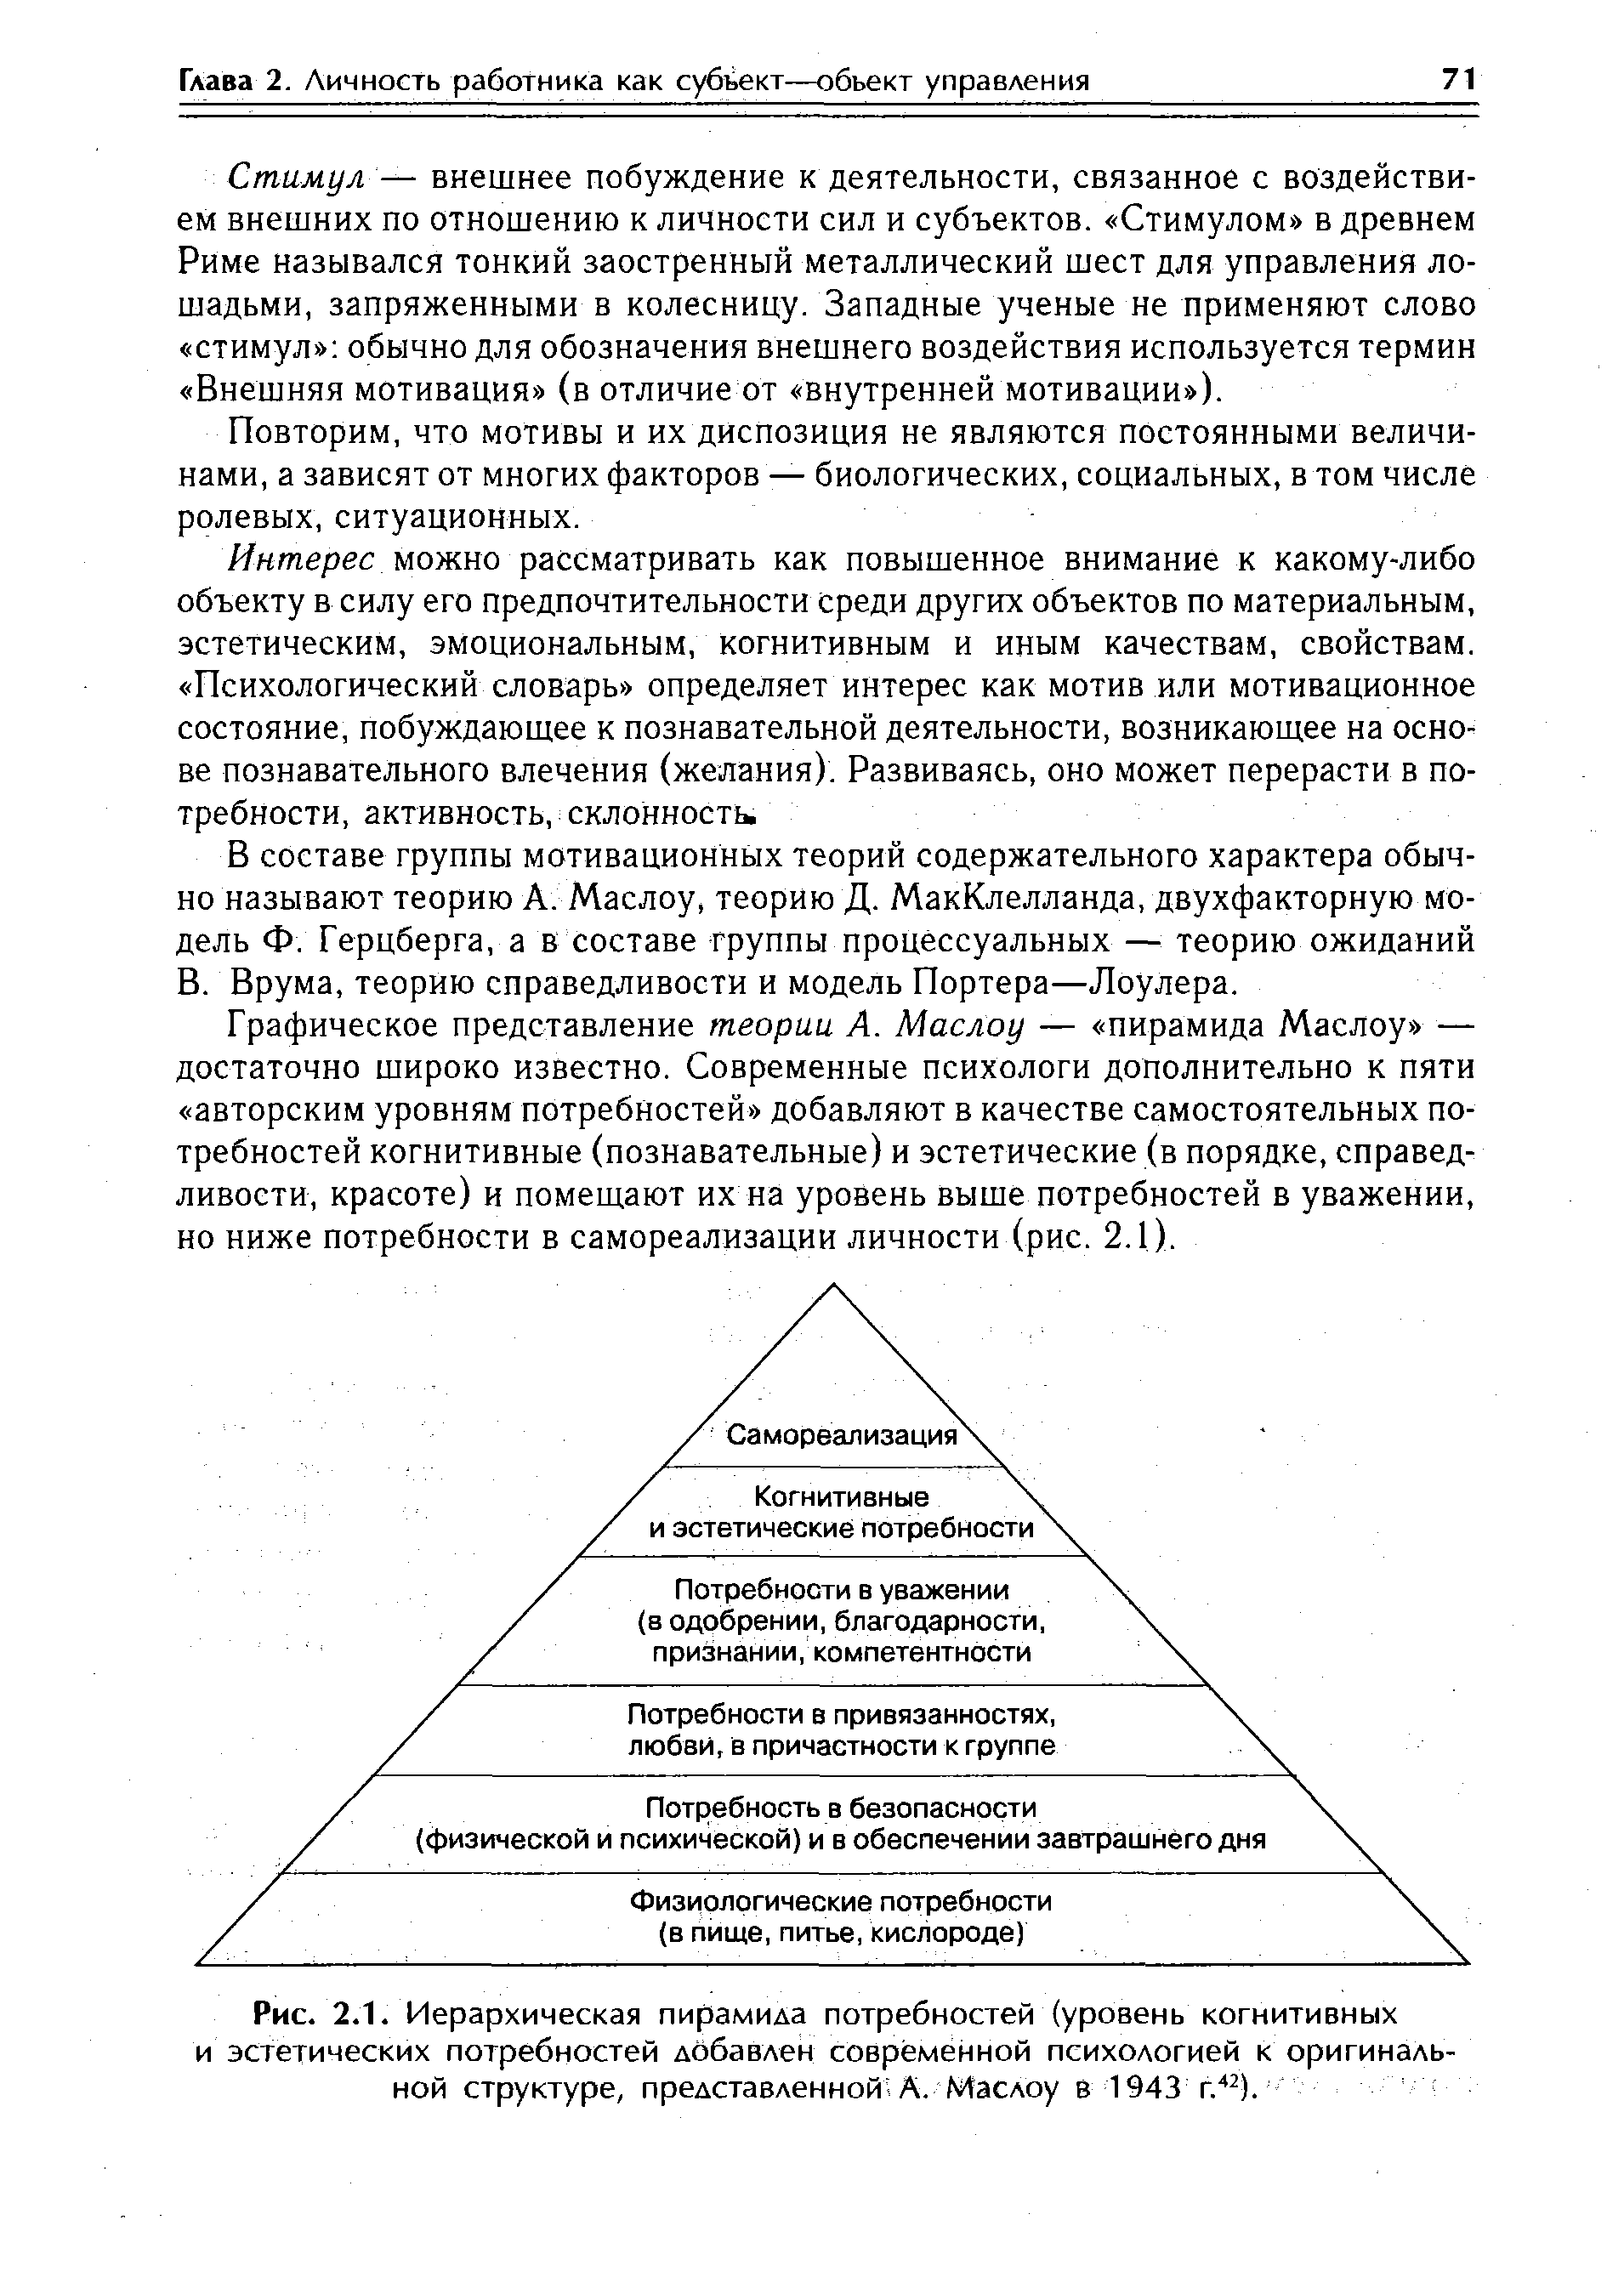 Рис. 2.1. <a href="/info/5972">Иерархическая пирамида</a> потребностей (уровень когнитивных и эстетических потребностей добавлен современной психологией к оригинальной структуре, представленной-А. Маслоу в 1943 г.42).